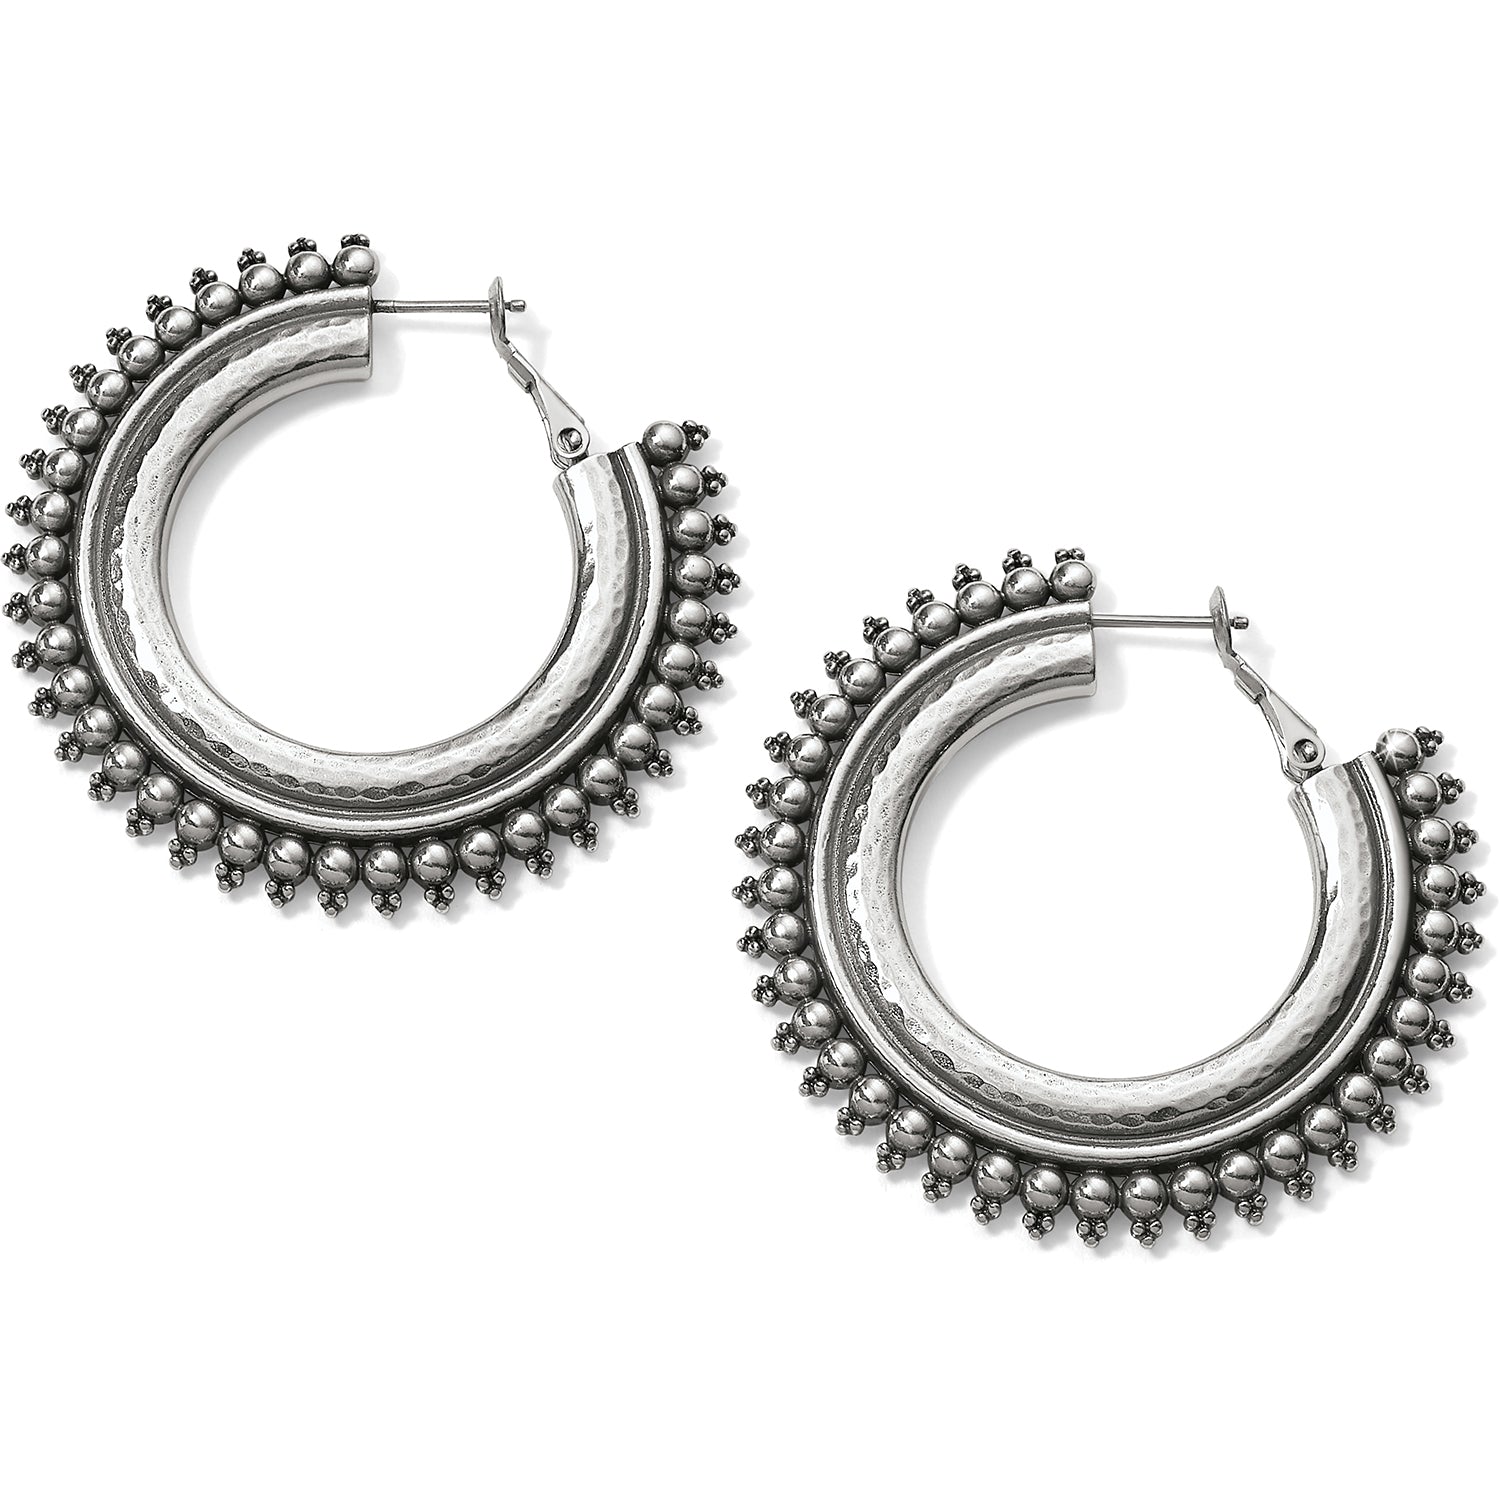 Telluride Hoop Earrings - Jewelry - SierraLily